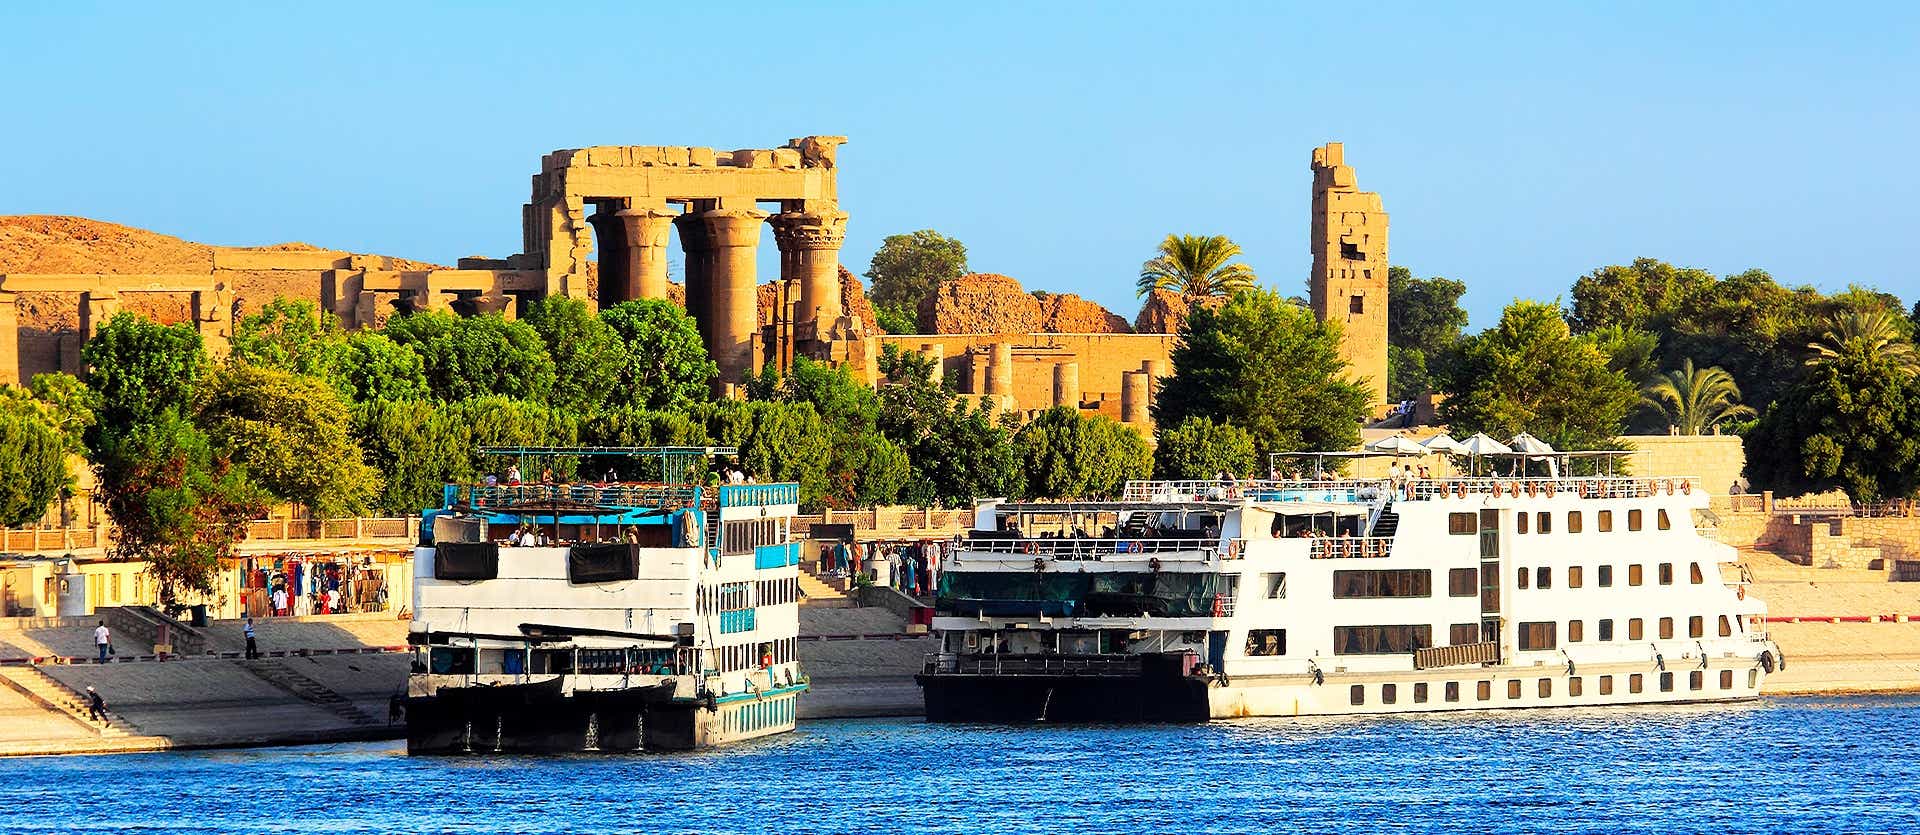 Nile Cruise <span class="iconos separador"></span> Kom Ombo <span class="iconos separador"></span> Egypt